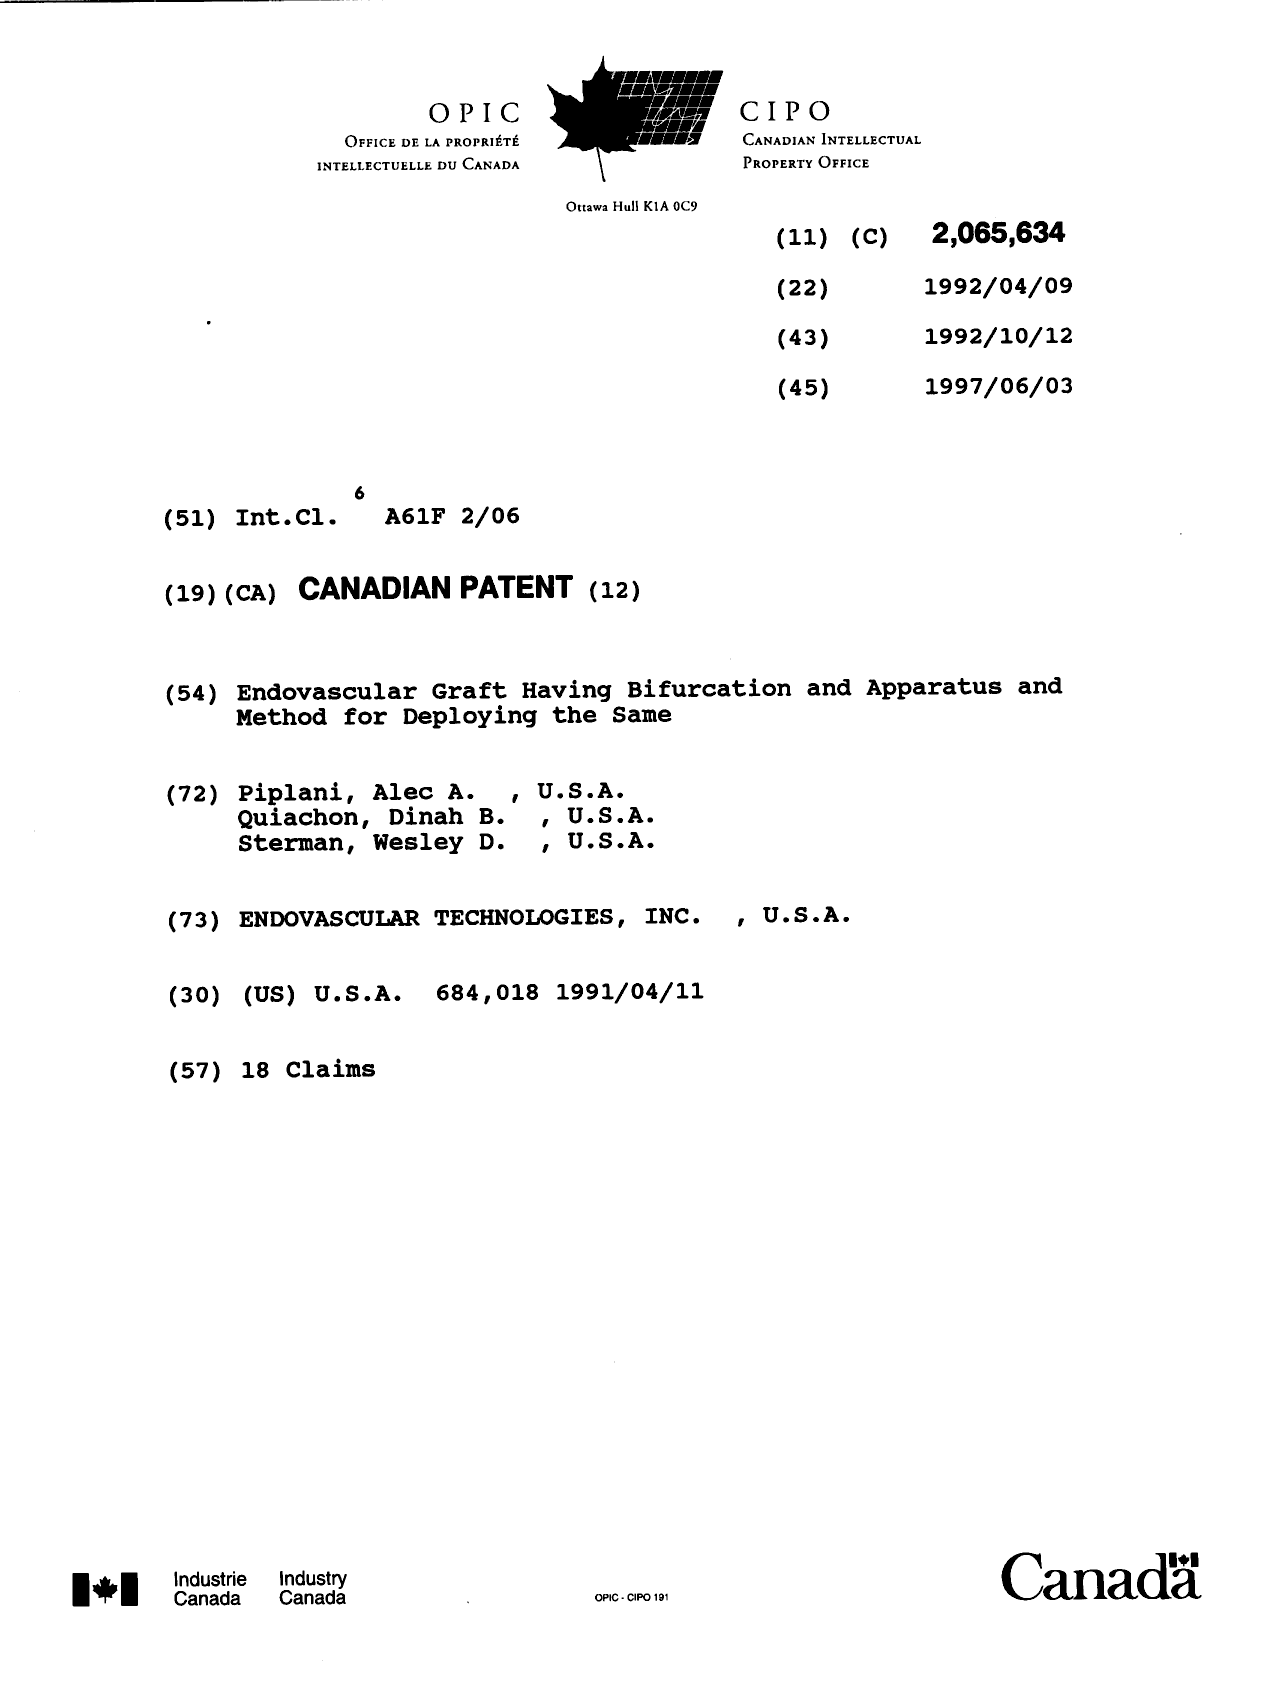 Document de brevet canadien 2065634. Page couverture 19970409. Image 1 de 1